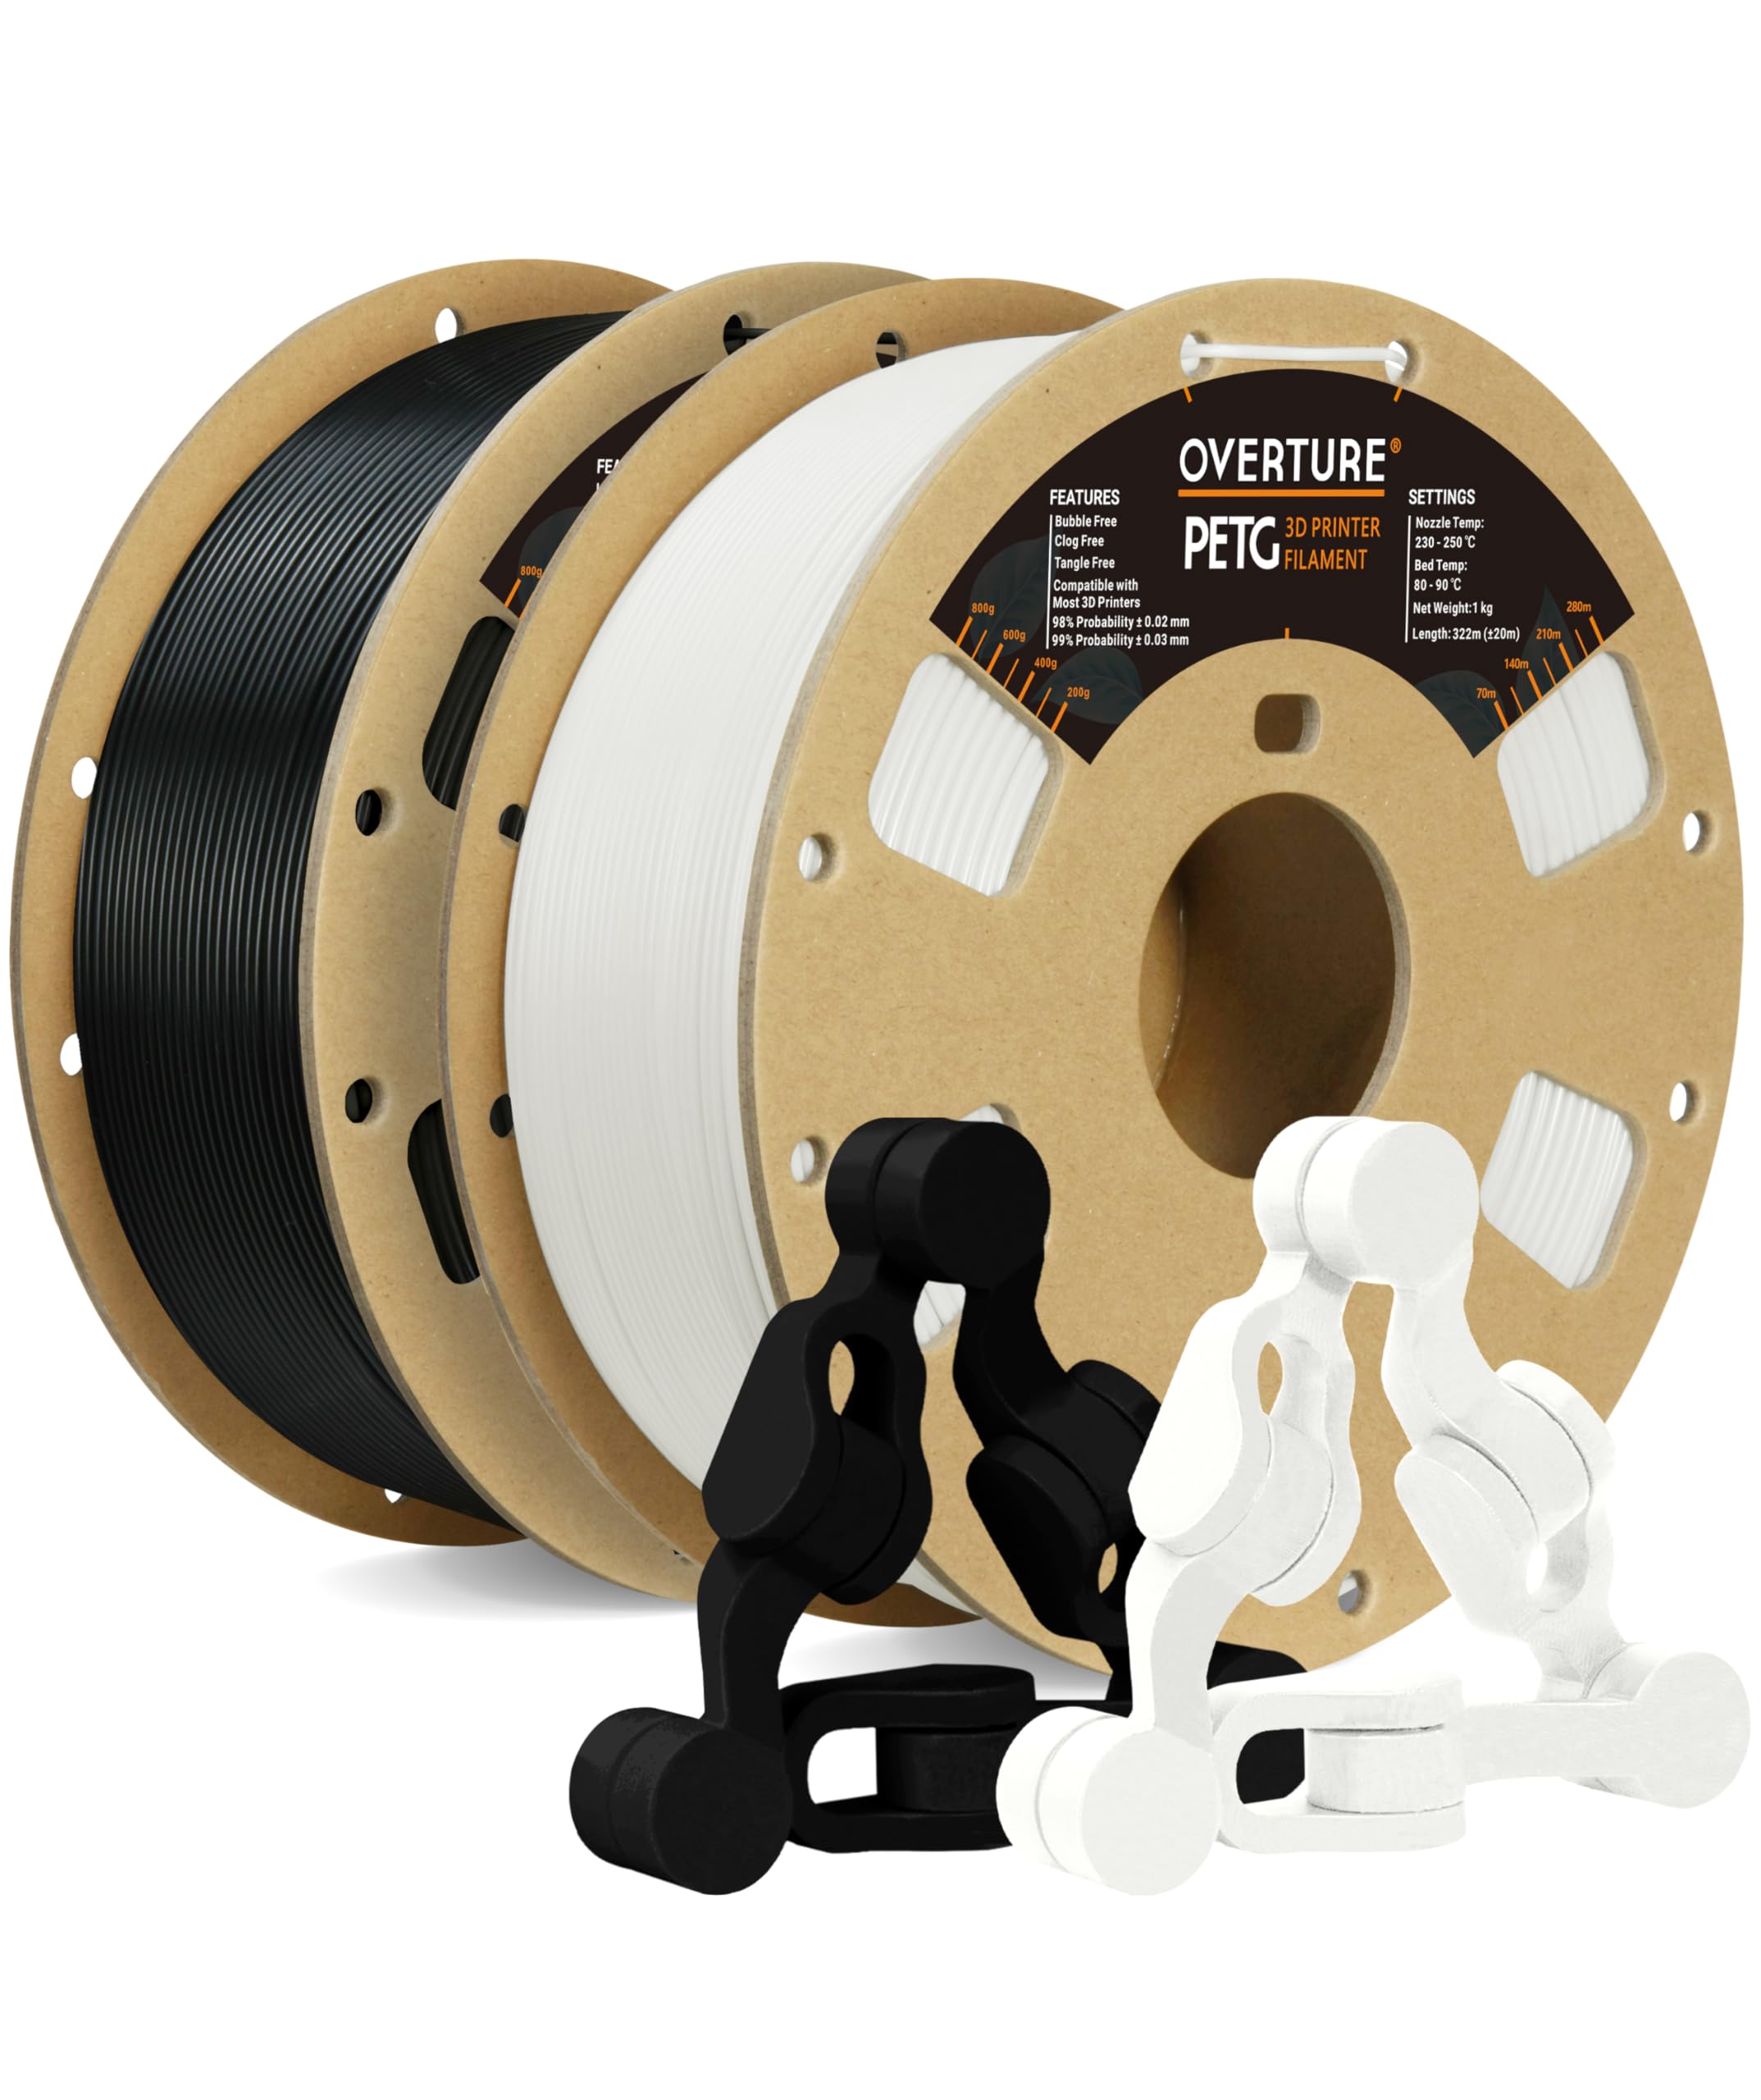 OVERTURE PETG フィラメント PETG 3Dプリンター用素材 3D印刷 3Dプリンター フィラメント 1.75mm 1kgスプール 高い寸法精度 高密度 環境保護 ほとんどのFDMプリンターに適合 (Black 1 White 1)